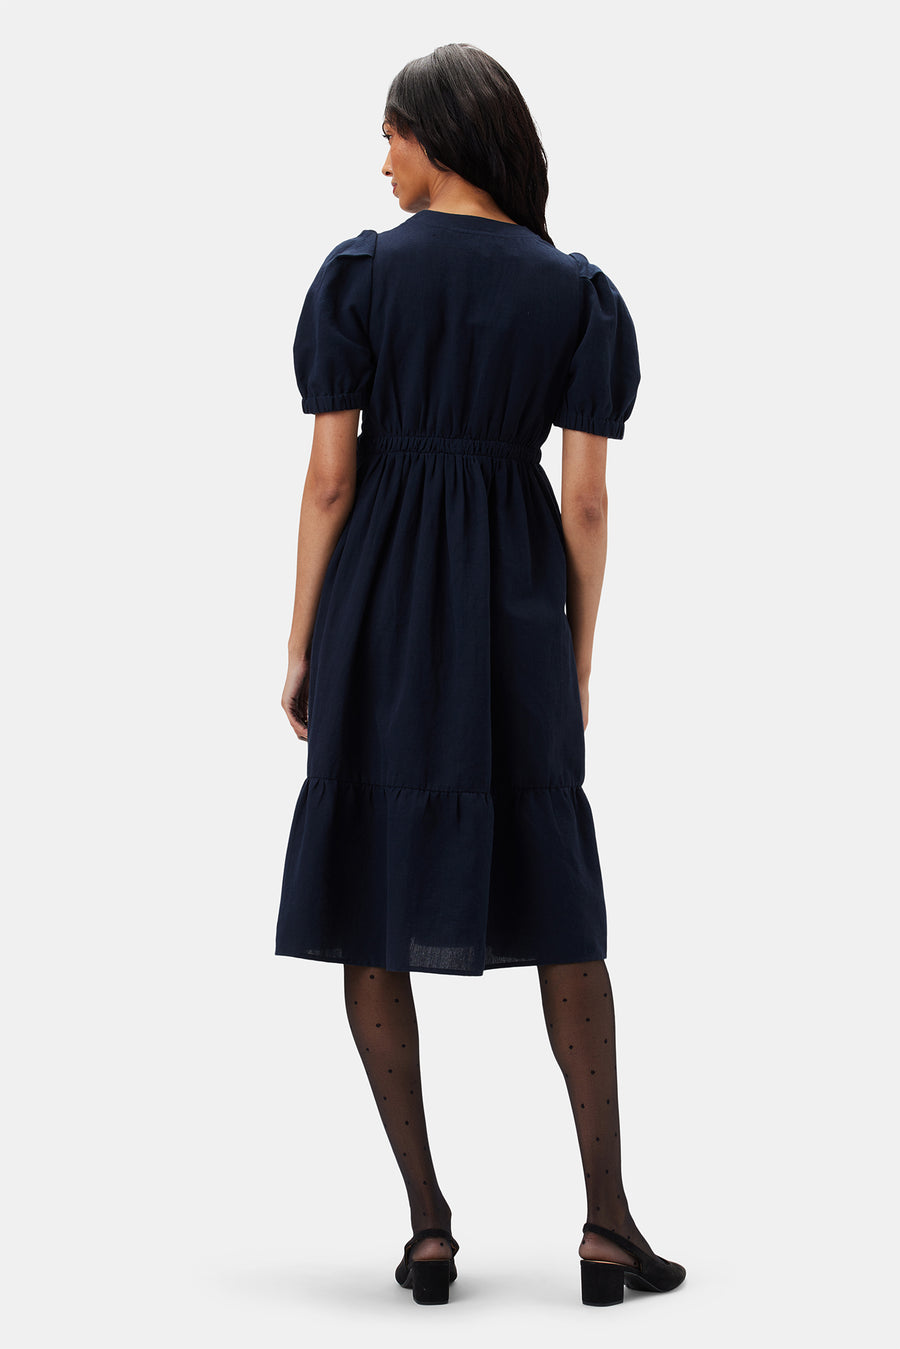 Danielle Cotton Linen Dress - Navy Blue